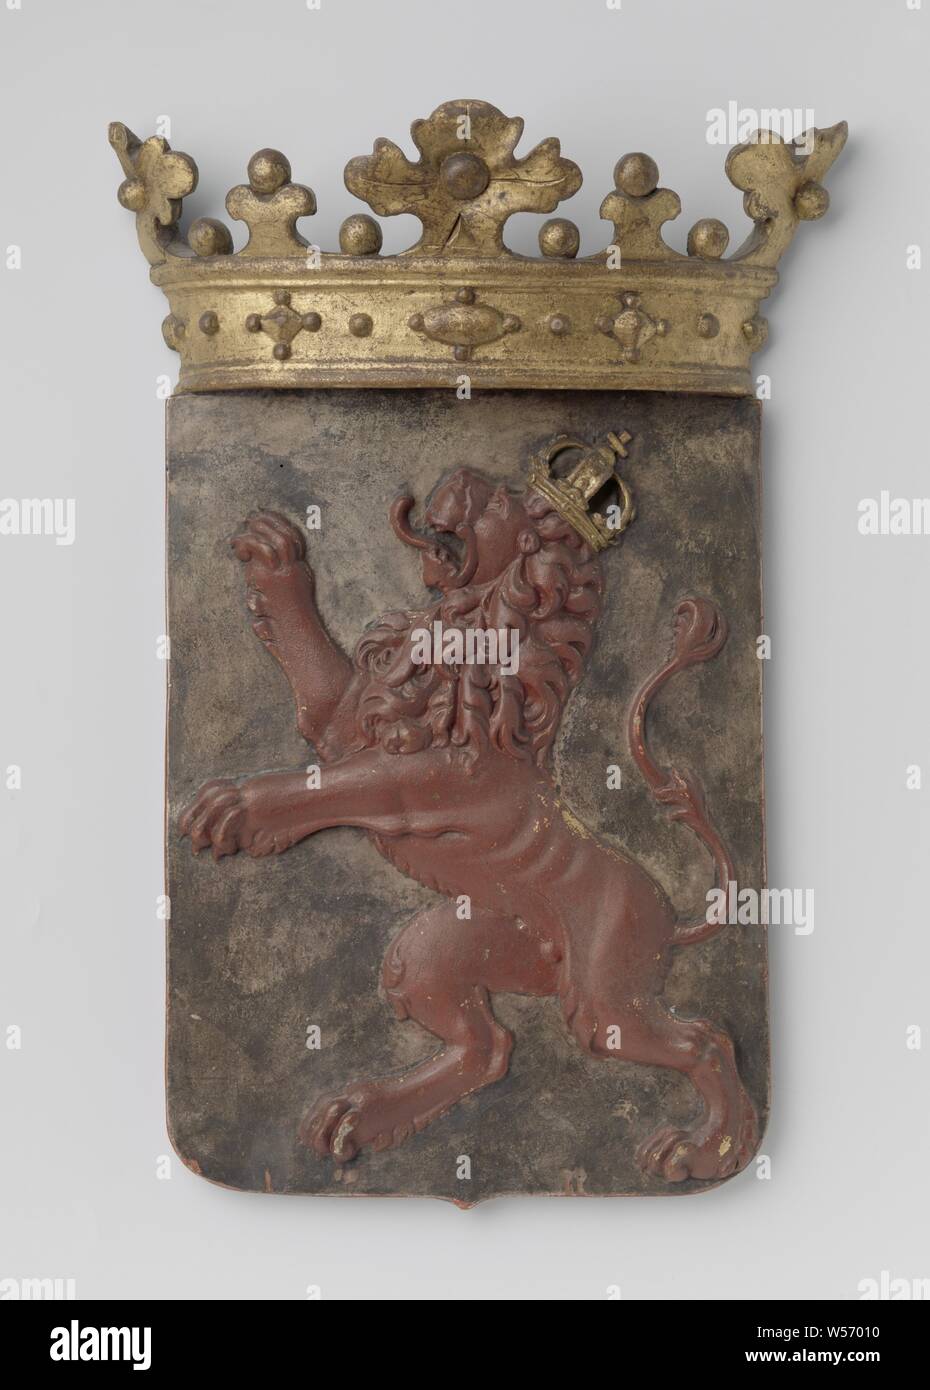 Il cuore scudo del M.A. de Ruyter, coronata di rivestimento in legno delle armi, tagliate in rilievo. Red Lion salendo a sinistra con corona d'oro su argento campo. I bordi dello schermo sono di colore rosso, così come la parte inferiore della corona, che è dorato, Spagna, Michiel Adriaansz. de Ruyter, anonimo, Paesi Bassi, nel o dopo il 1677, il legno (materiale vegetale), h 48,5 cm × W 32,8 cm × t 9.1 cm Foto Stock